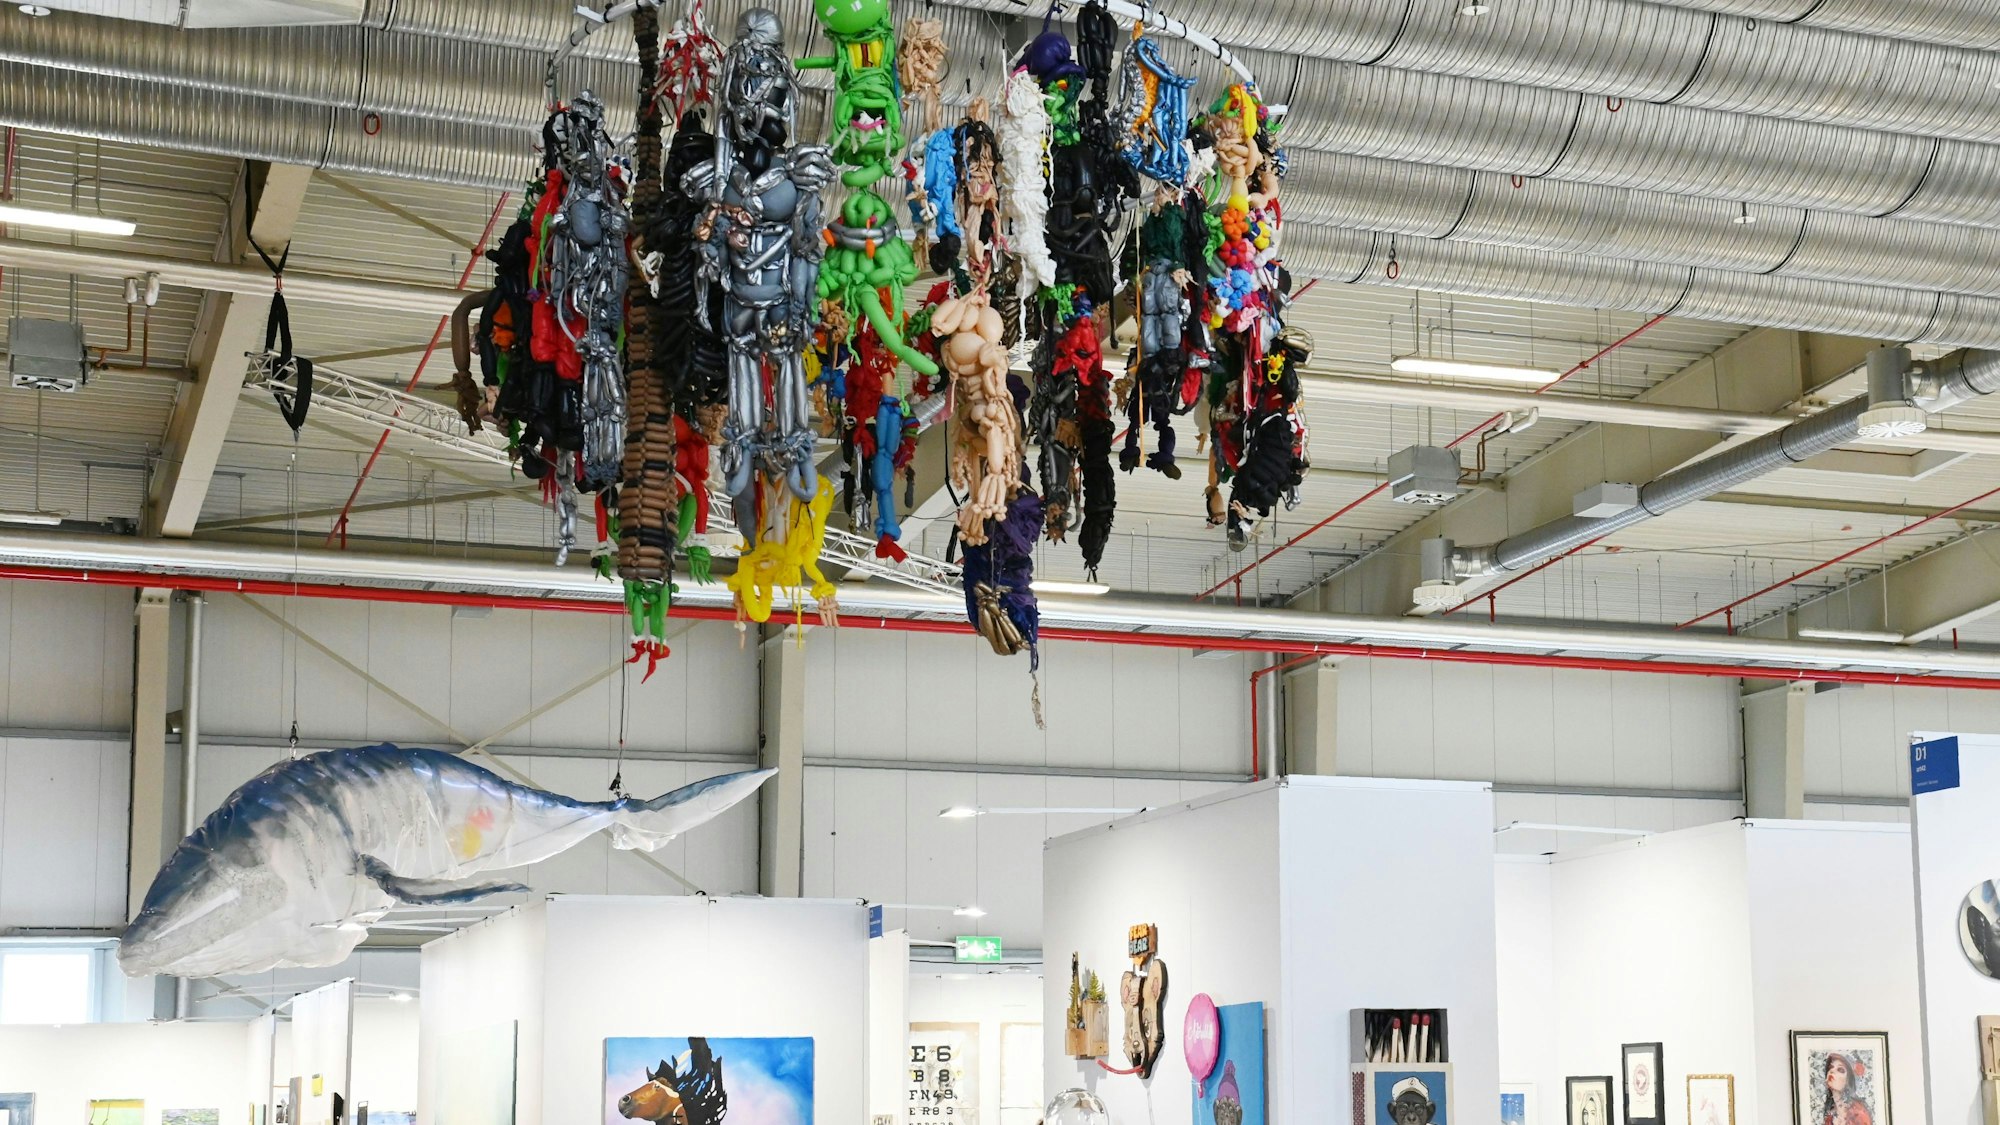 Die zwei größten Werke der Discovery Art Fair hängen von der Decke: Horrorfiguren aus Ballons, denen die Luft ausgeht und ein lebensgroßer Plastikwal. Foto von Alexander Schwaiger.